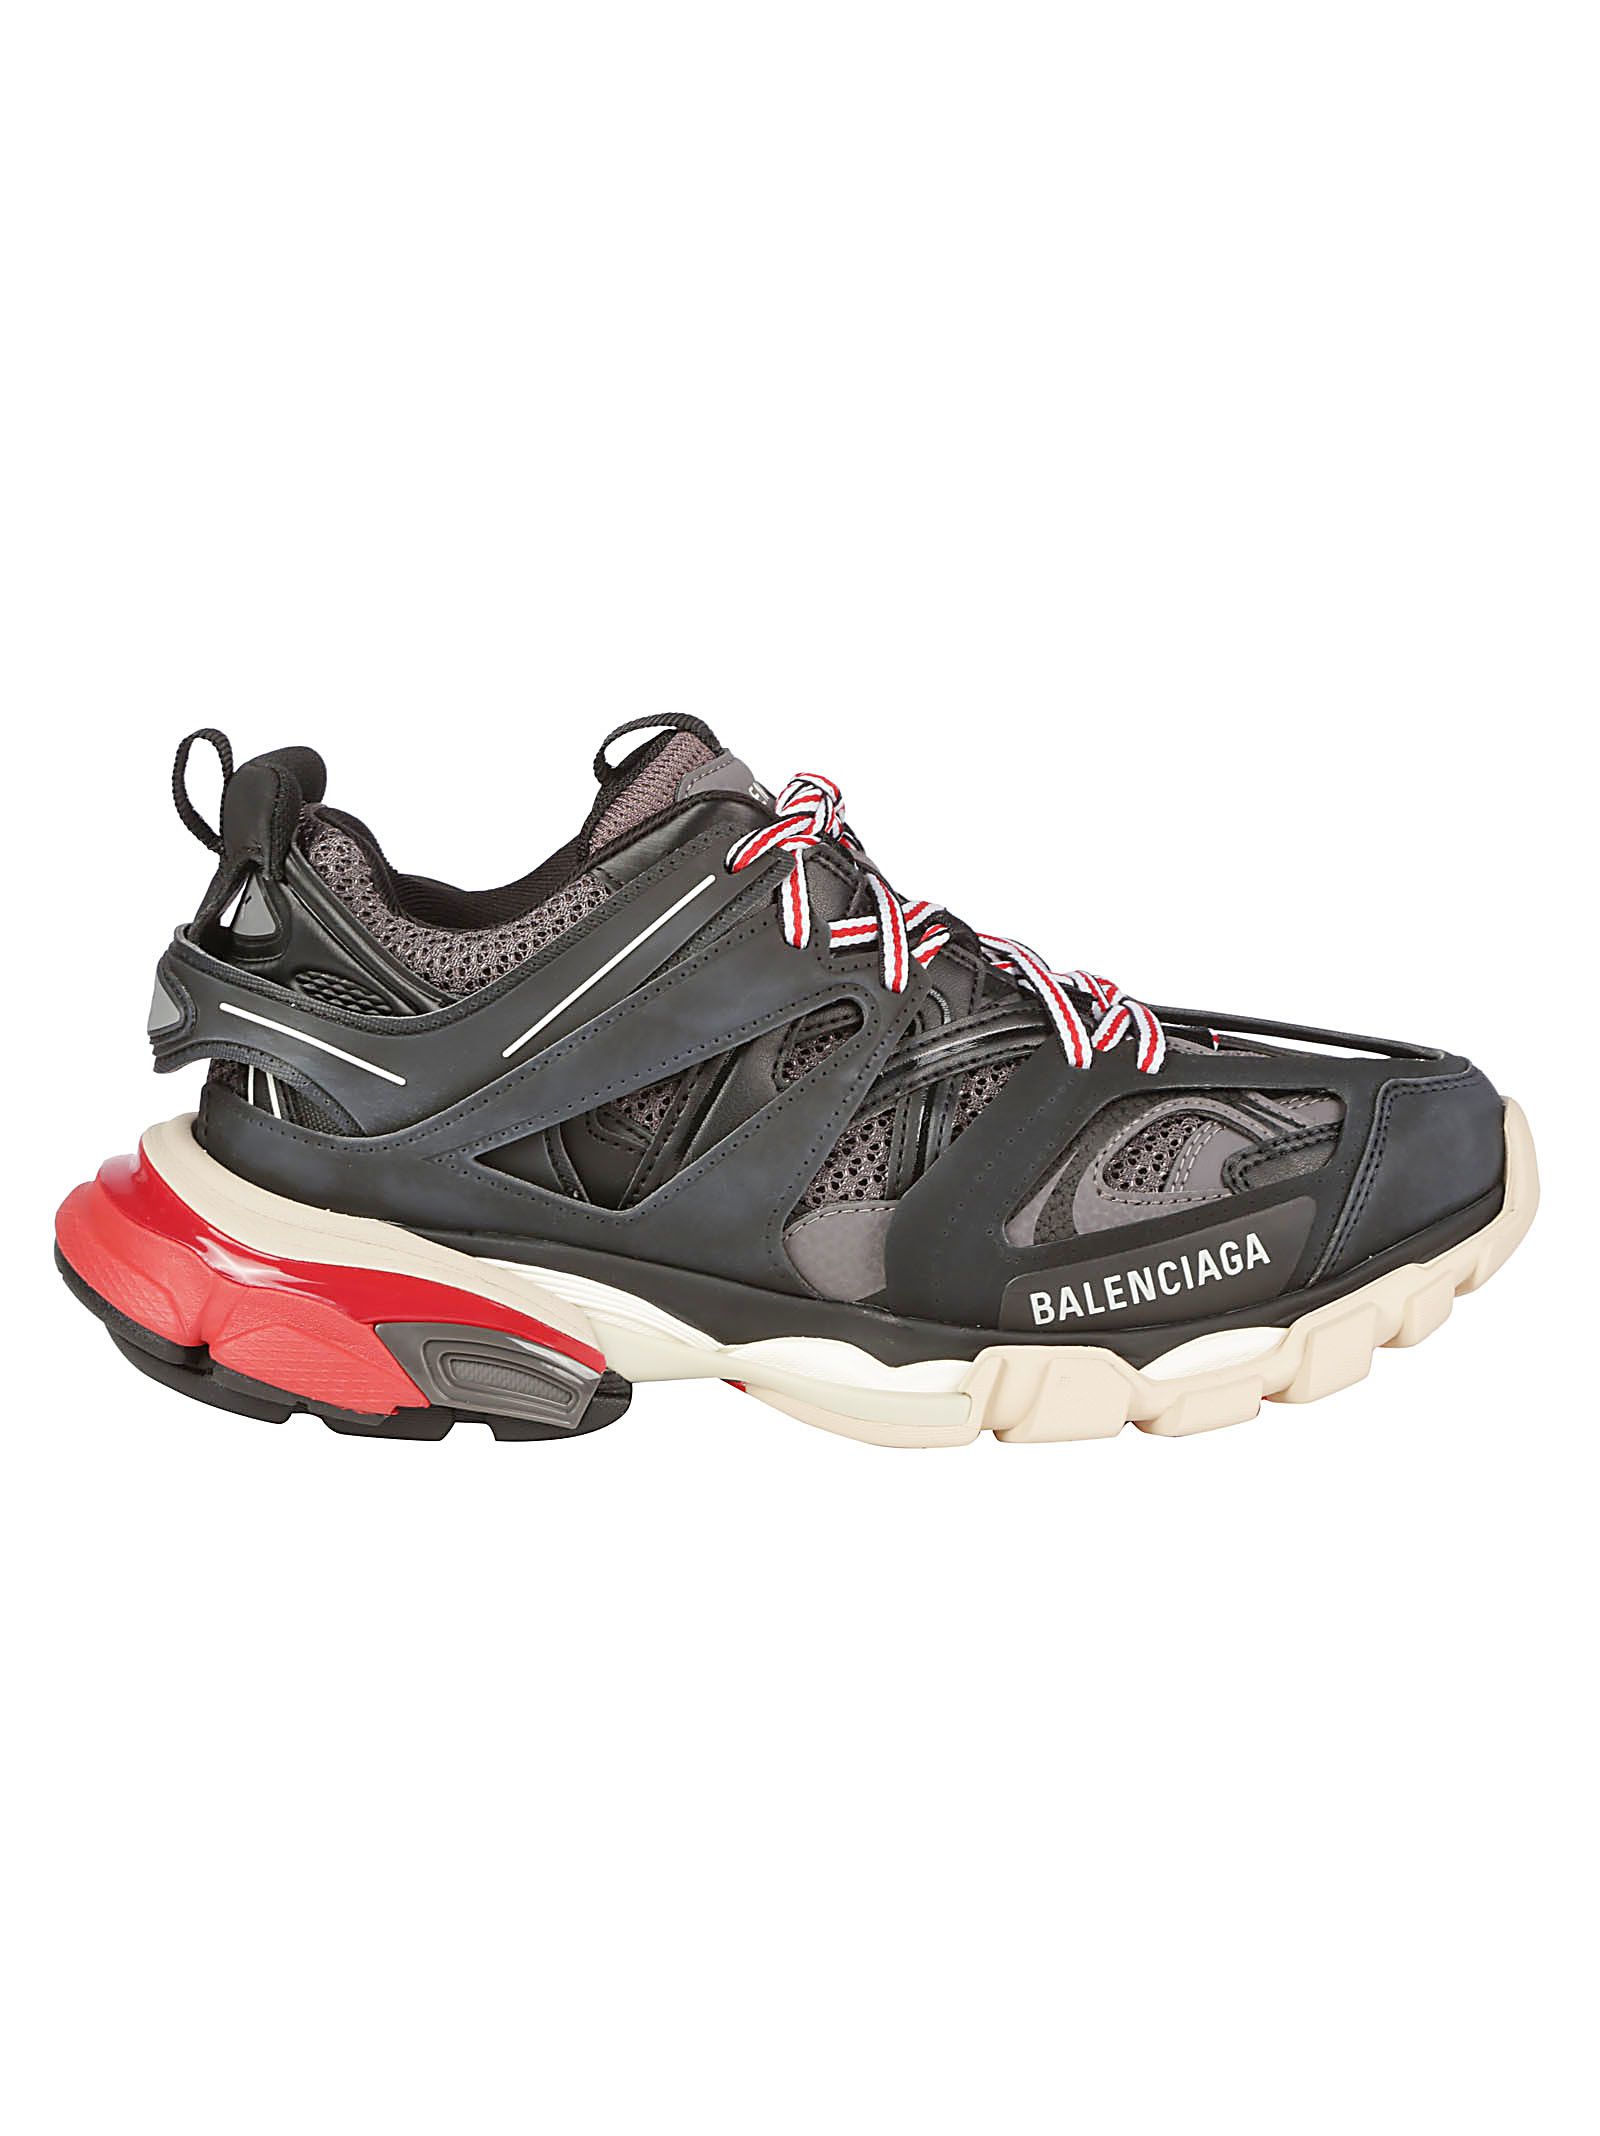 Balenciaga Track Sneakers In Noir/Gris | ModeSens